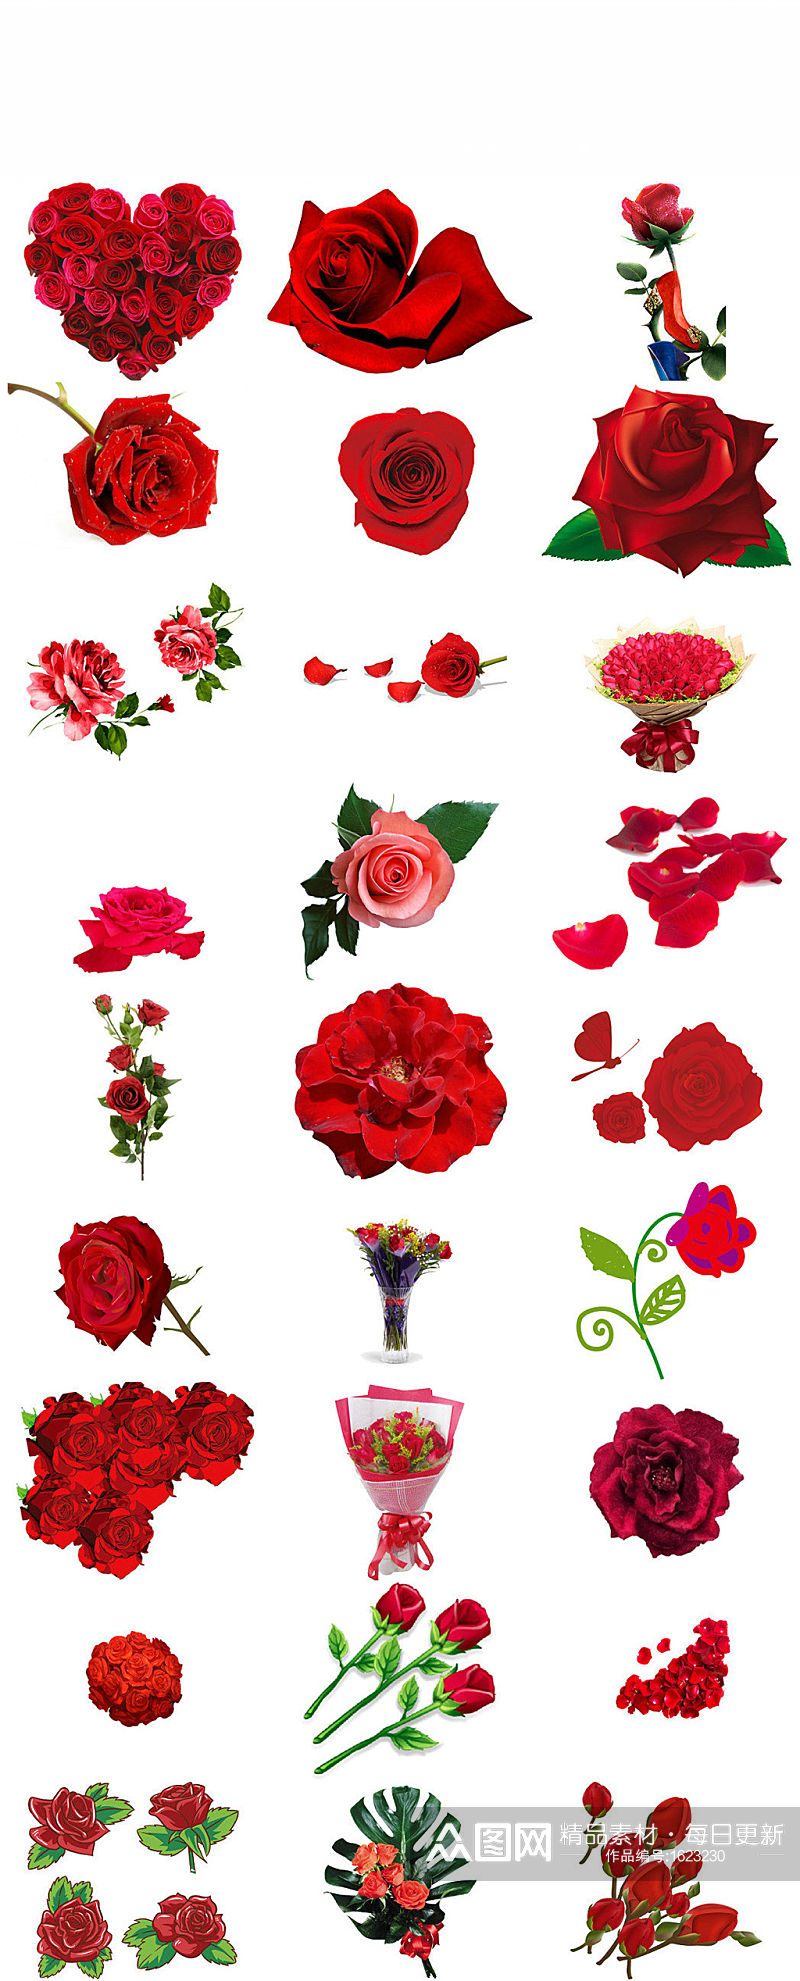 情人节红玫瑰图片素材大全素材